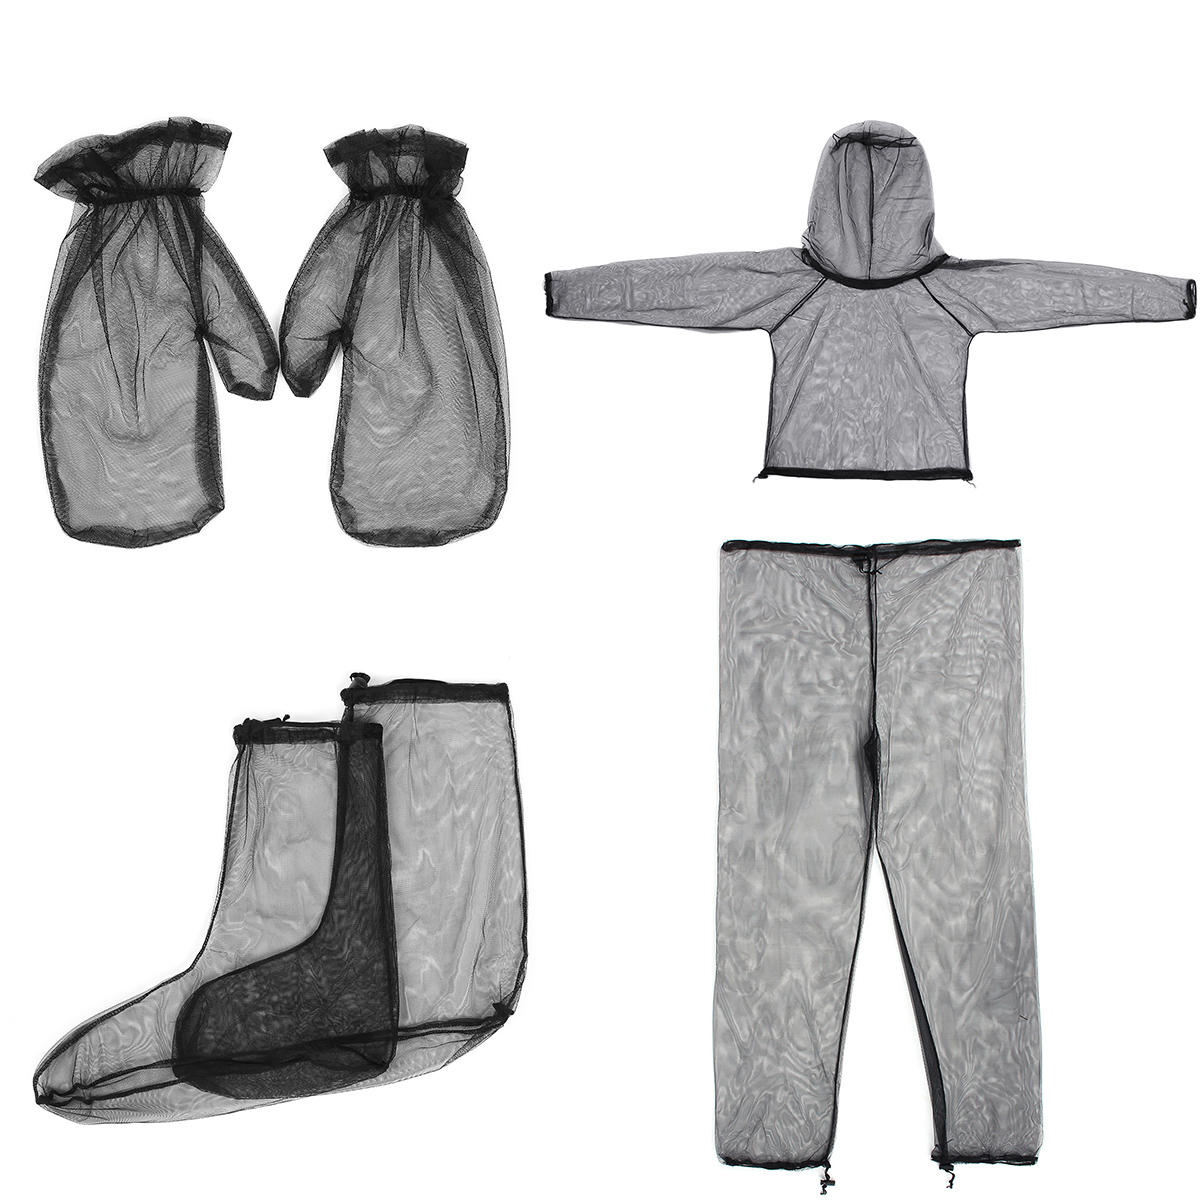 Leichter Outdoor-Reise-Campinganzug aus hochdichtem Netzgewebe, bestehend aus Jacke, Hose, Handschuhen und Socken, die vor Mücken schützen.